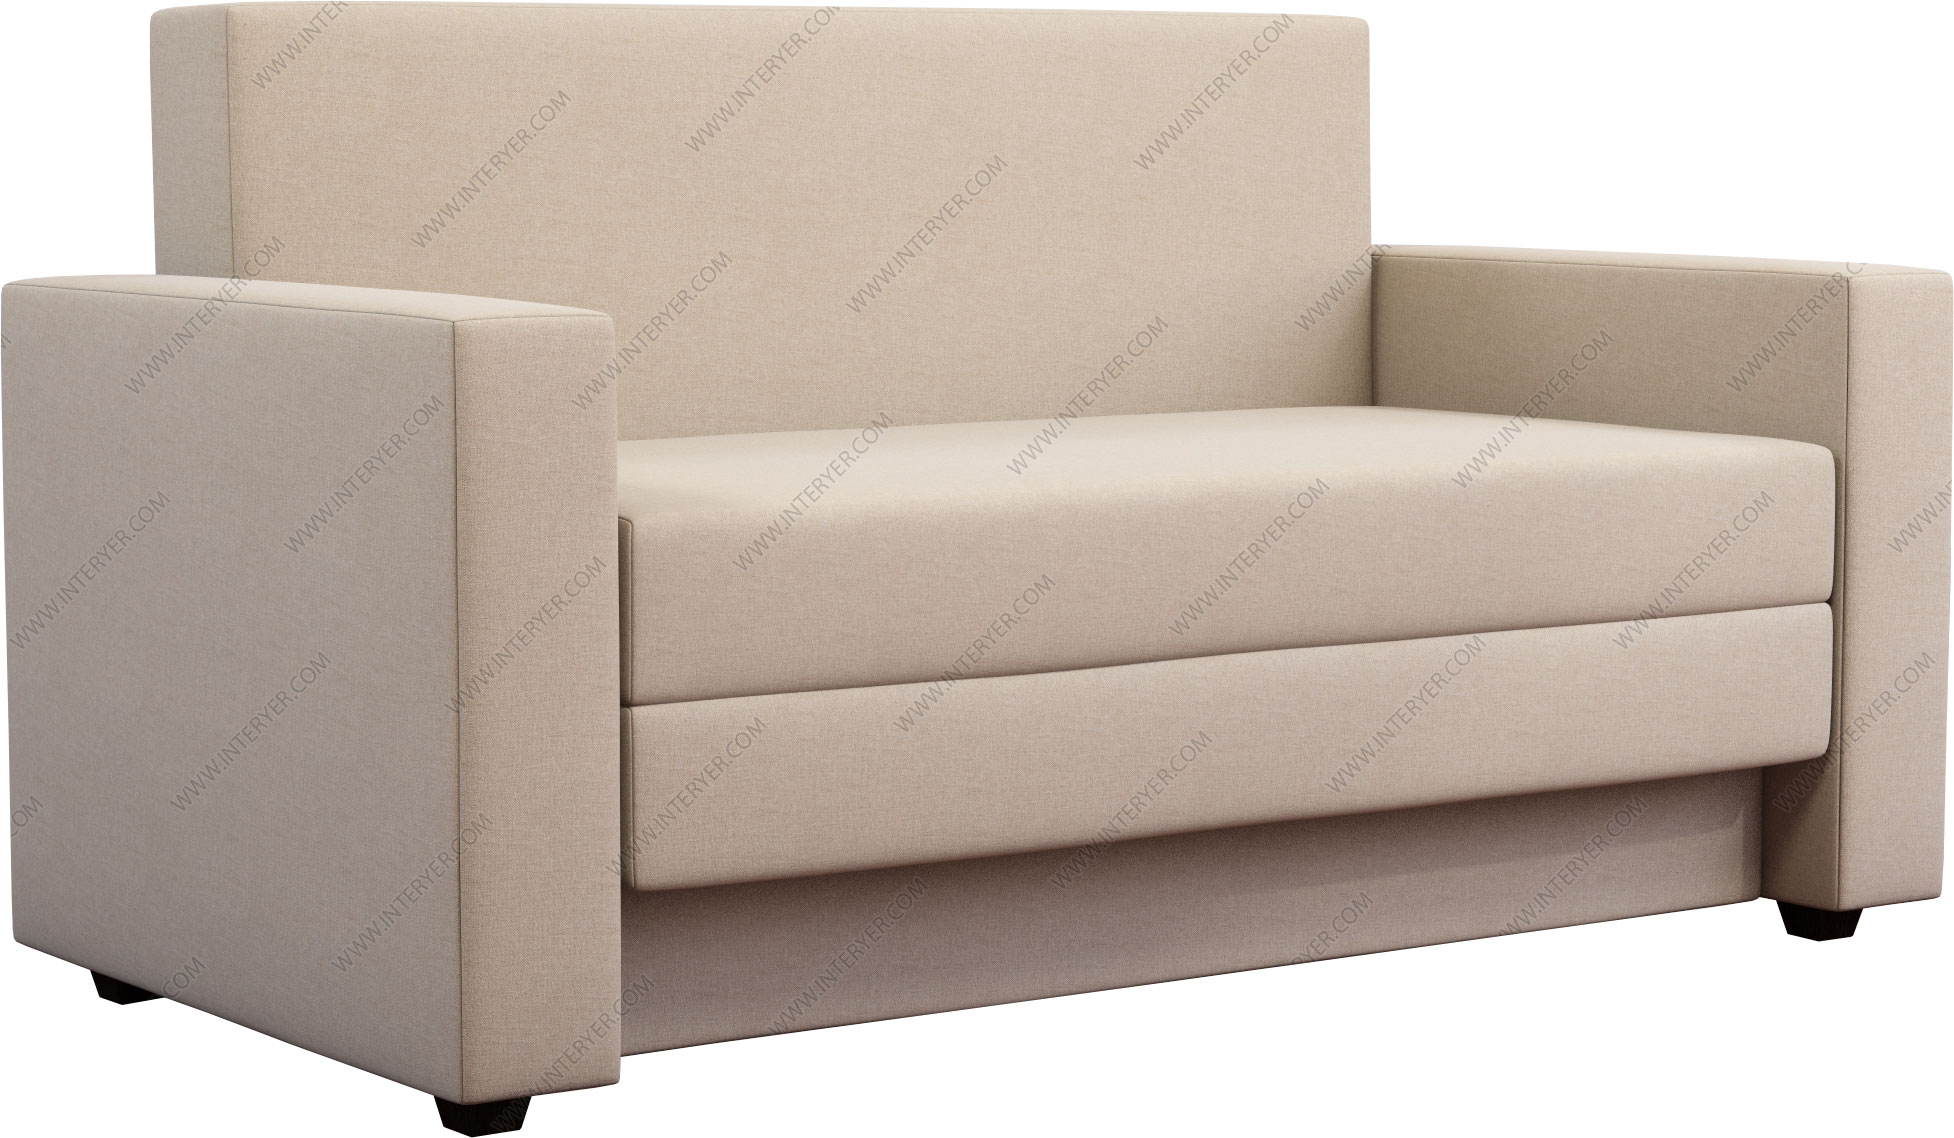 Купить диван выкатной малютка Гольф А1 рогожка светлая - диван выкатноймалютка Гольф А1 рогожка светлая недорого в Москве - цена 23290 руб.